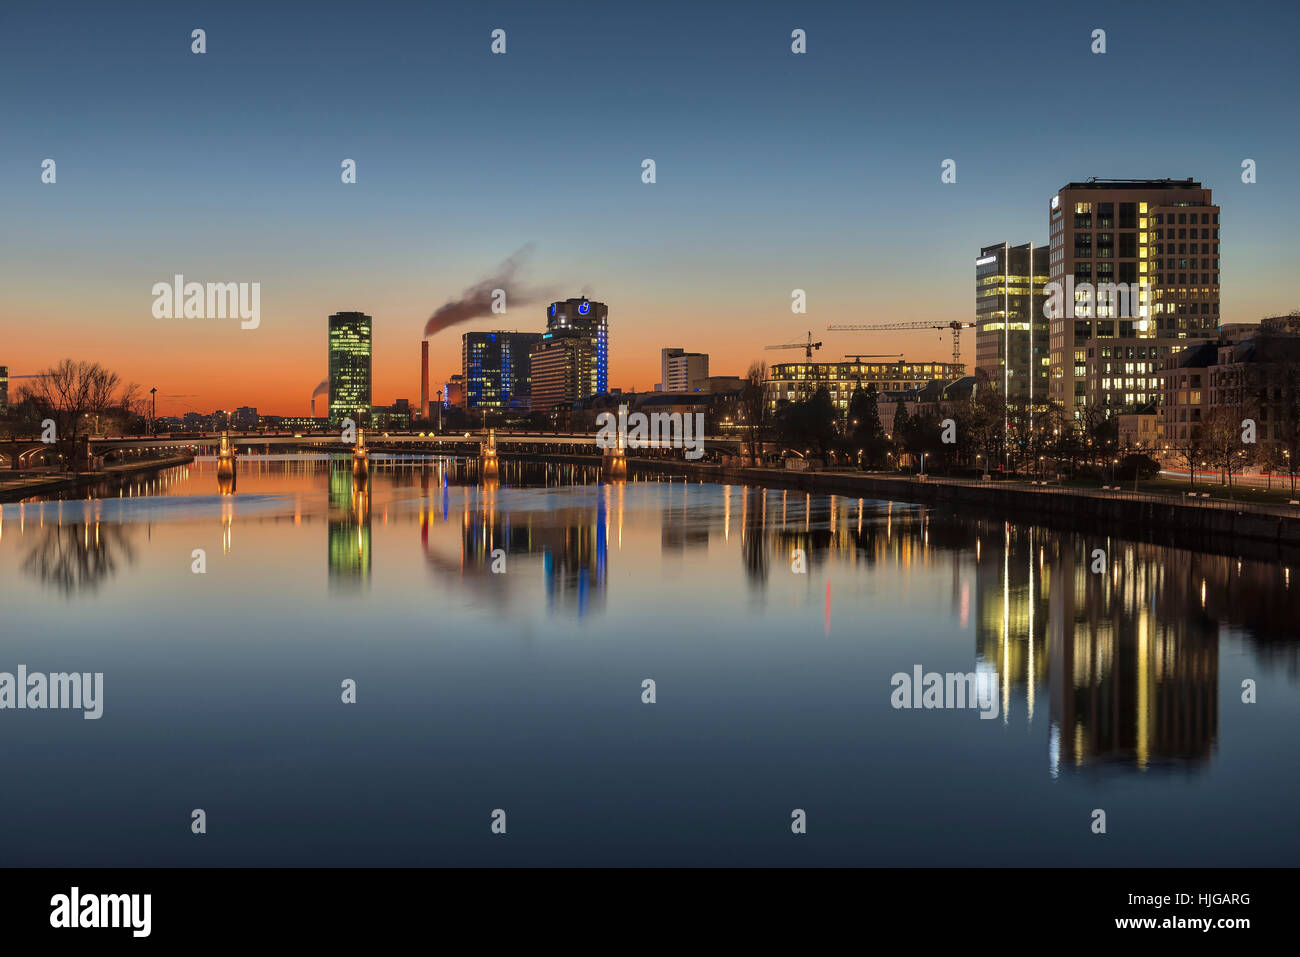 Westhafen Tower, Union Investment Wolkenkratzer und Untermainbrücke bei Sonnenuntergang, Abend, Frankfurt am Main, Hessen, Deutschland Stockfoto